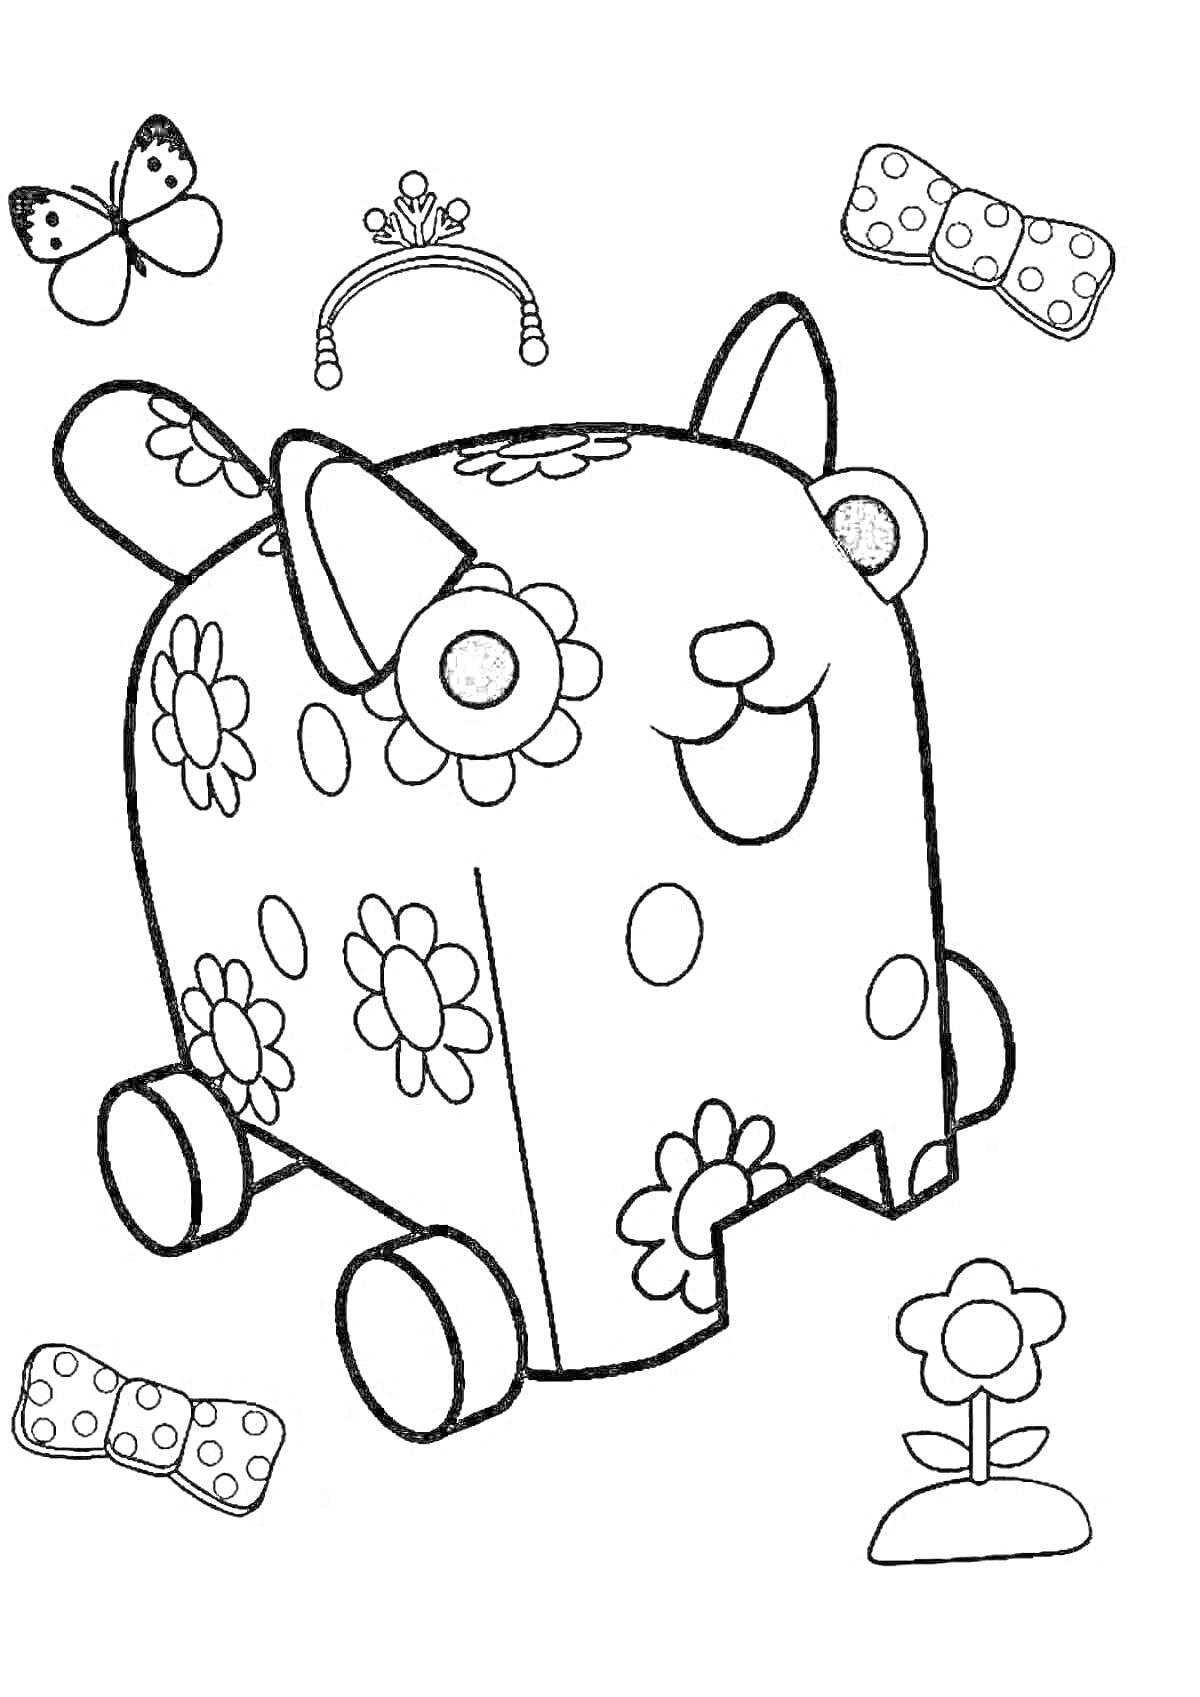 Раскраска Деревянная игрушка-собачка с цветами на колесах, банты, цветок, бабочка и диадема